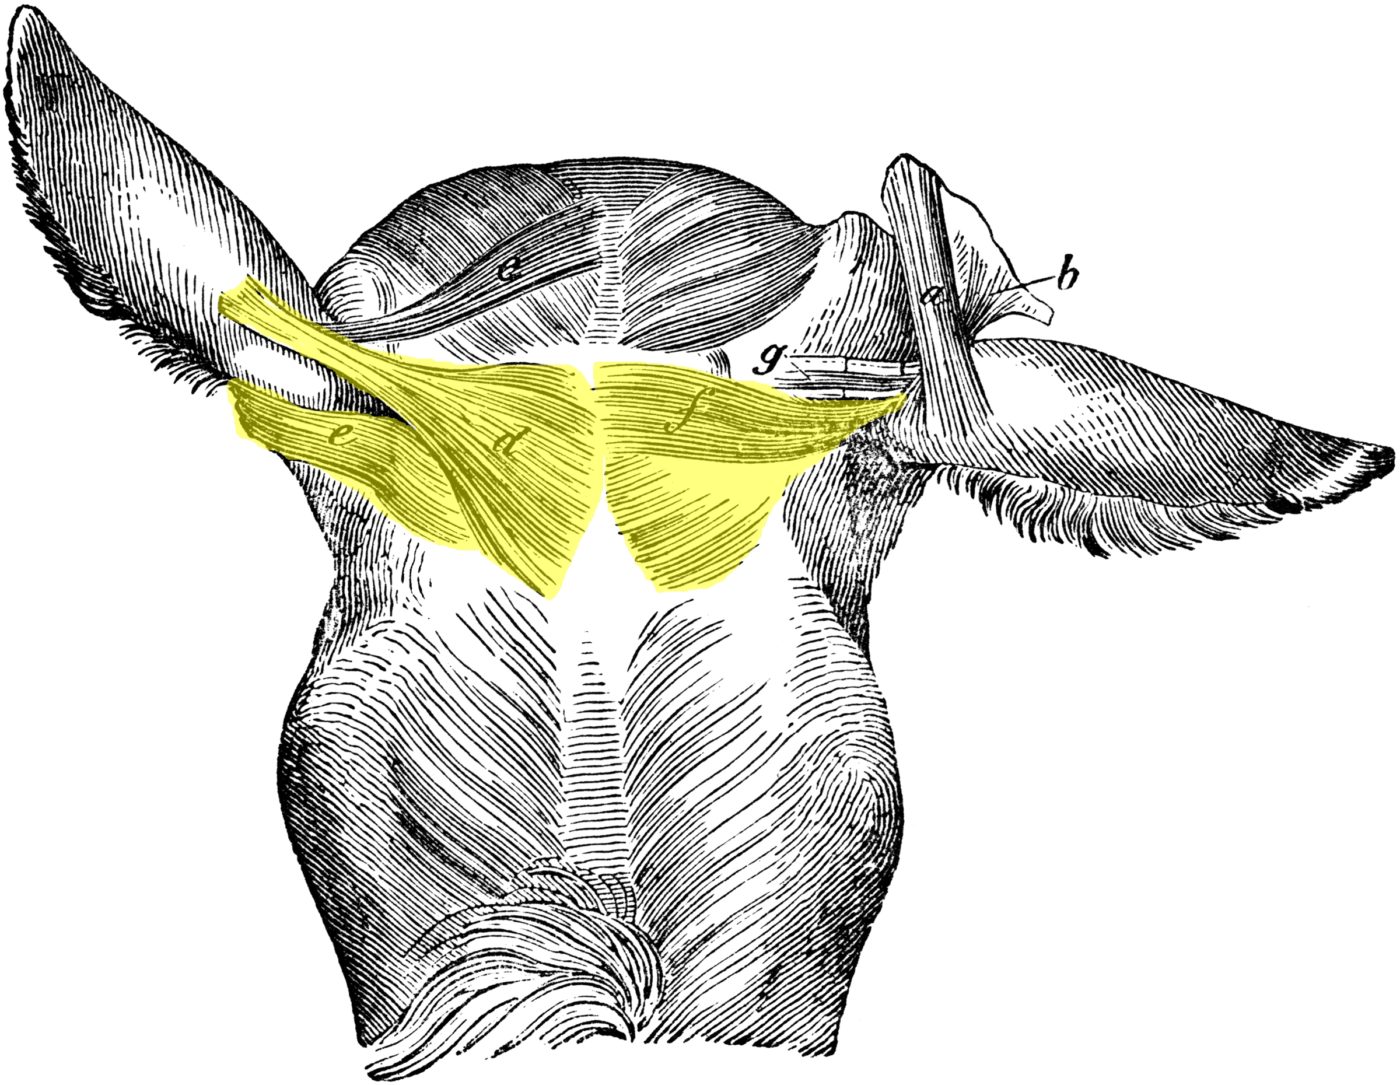 Muscles superficiels de la tête du cheval - vue de dessus (3) ; colorisation pour la mise en évidence des muscles auriculaires (zone têtière)